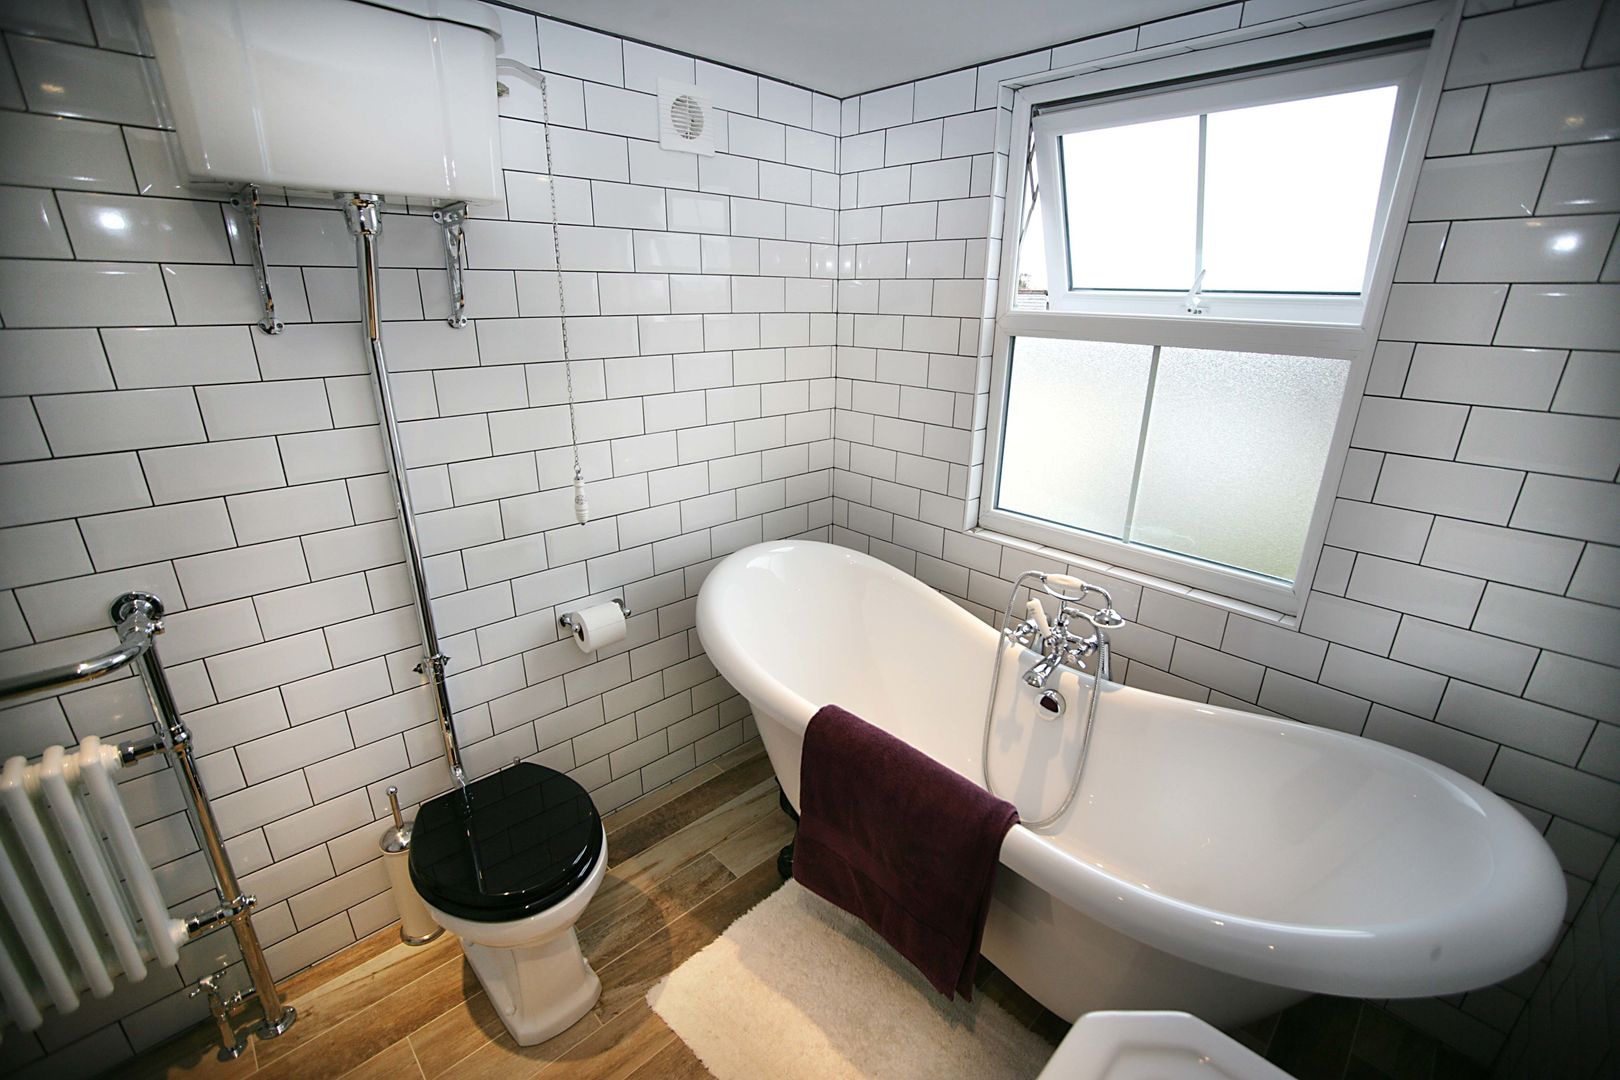 Ensuite Loft Bathroom A1 Lofts and Extensions Baños de estilo industrial Bañeras y duchas